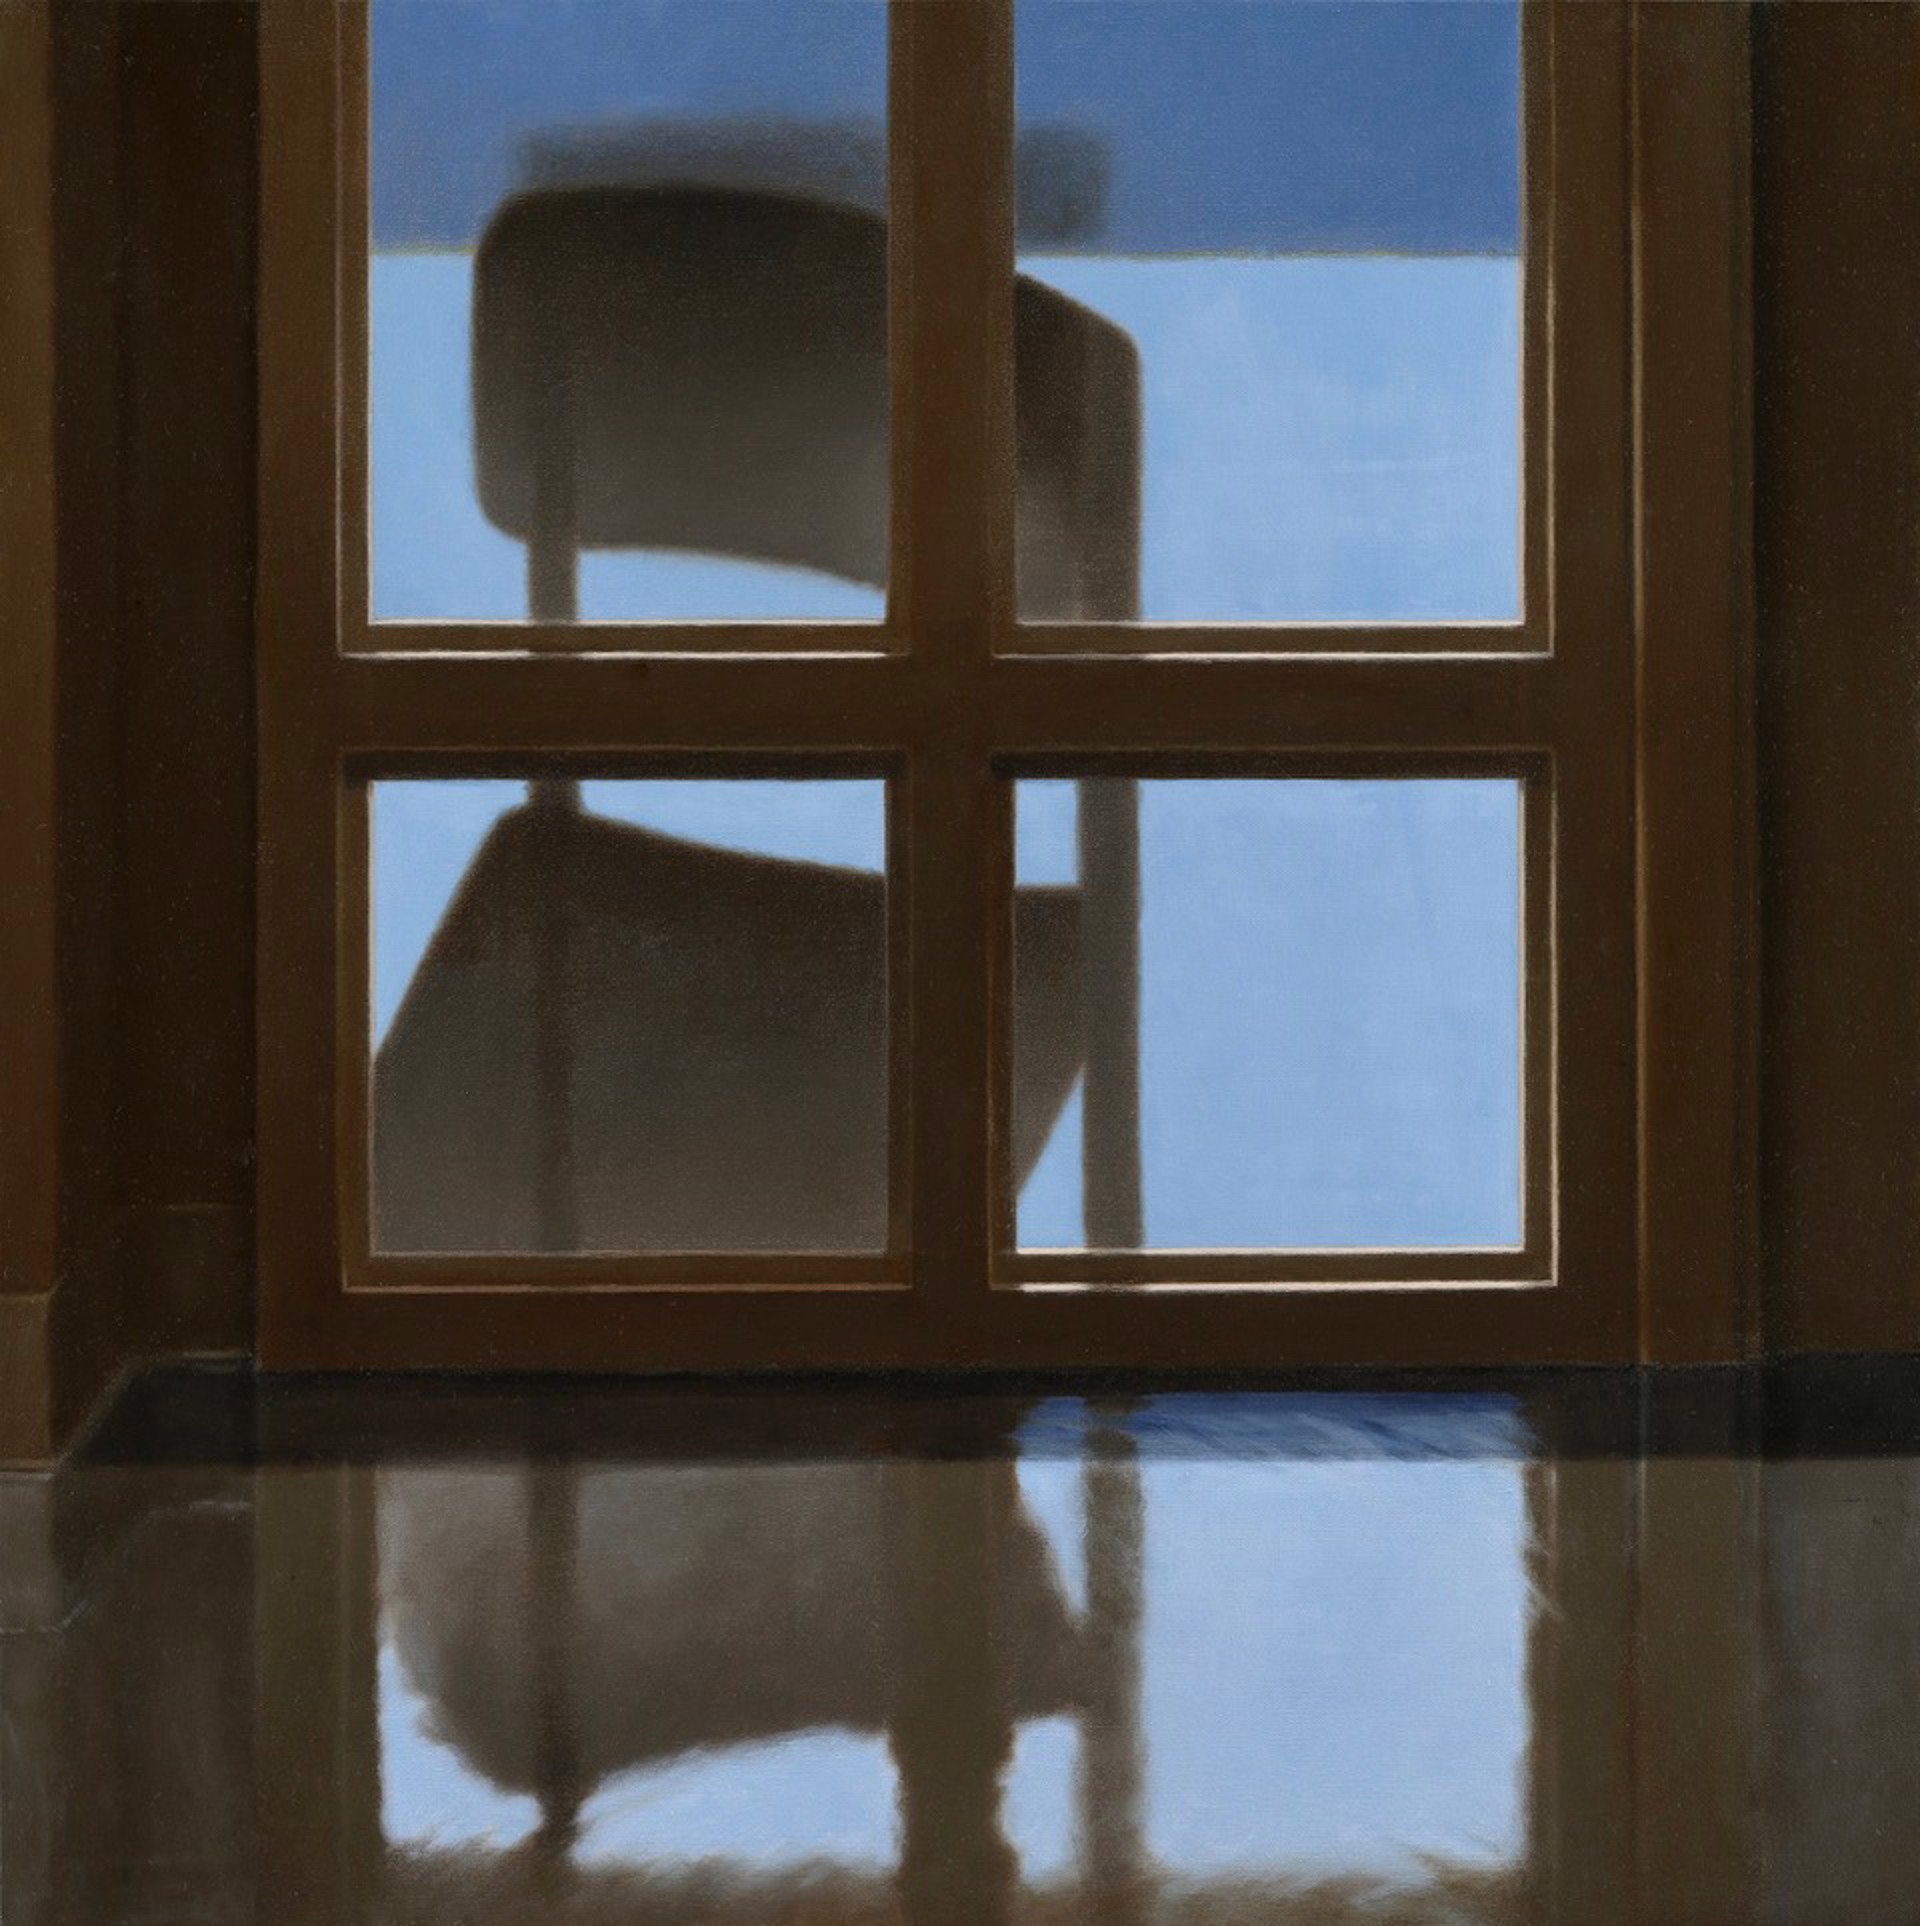 The Window by Mimi Jensen